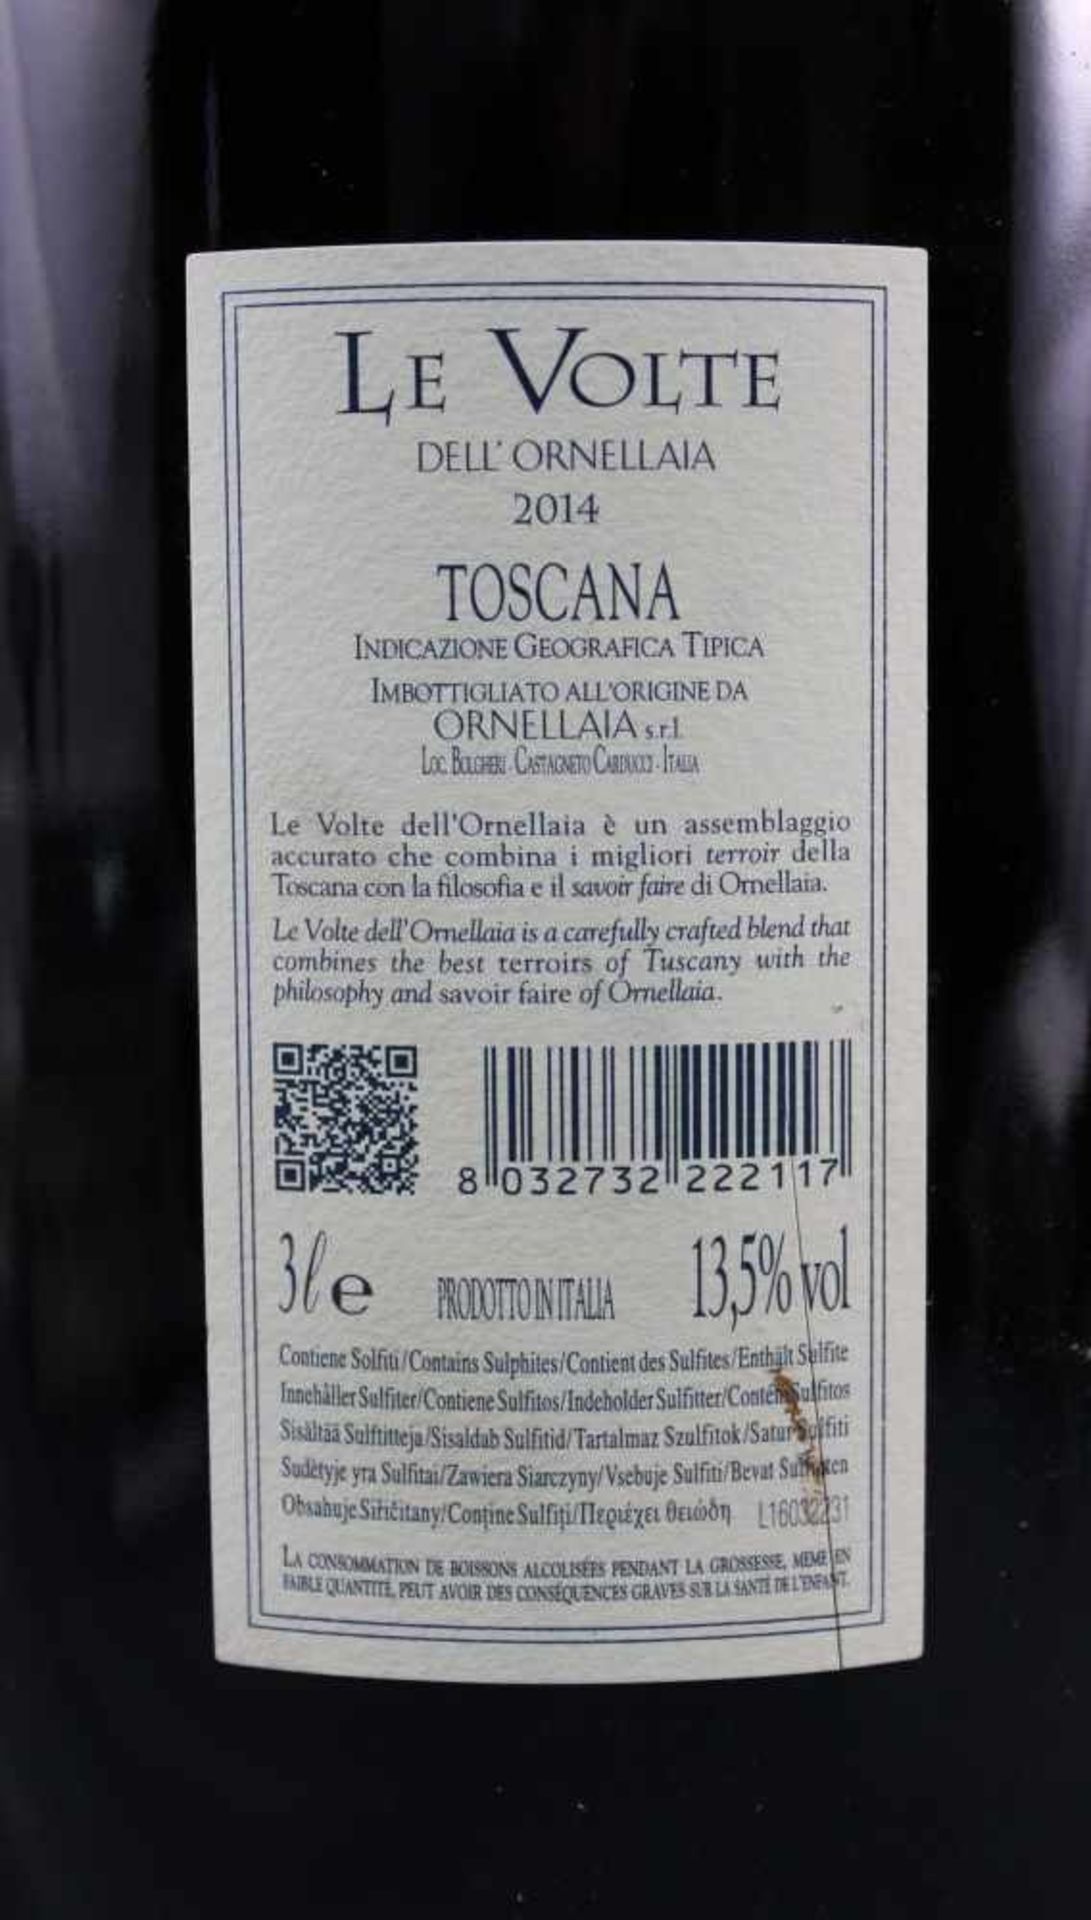 2014 Le Volte Dell' Ornellaia. Toscana IGT. Doppelmagnum.Eine Flasche Doppelmagnum 3 Liter, 13,5% - Bild 5 aus 8